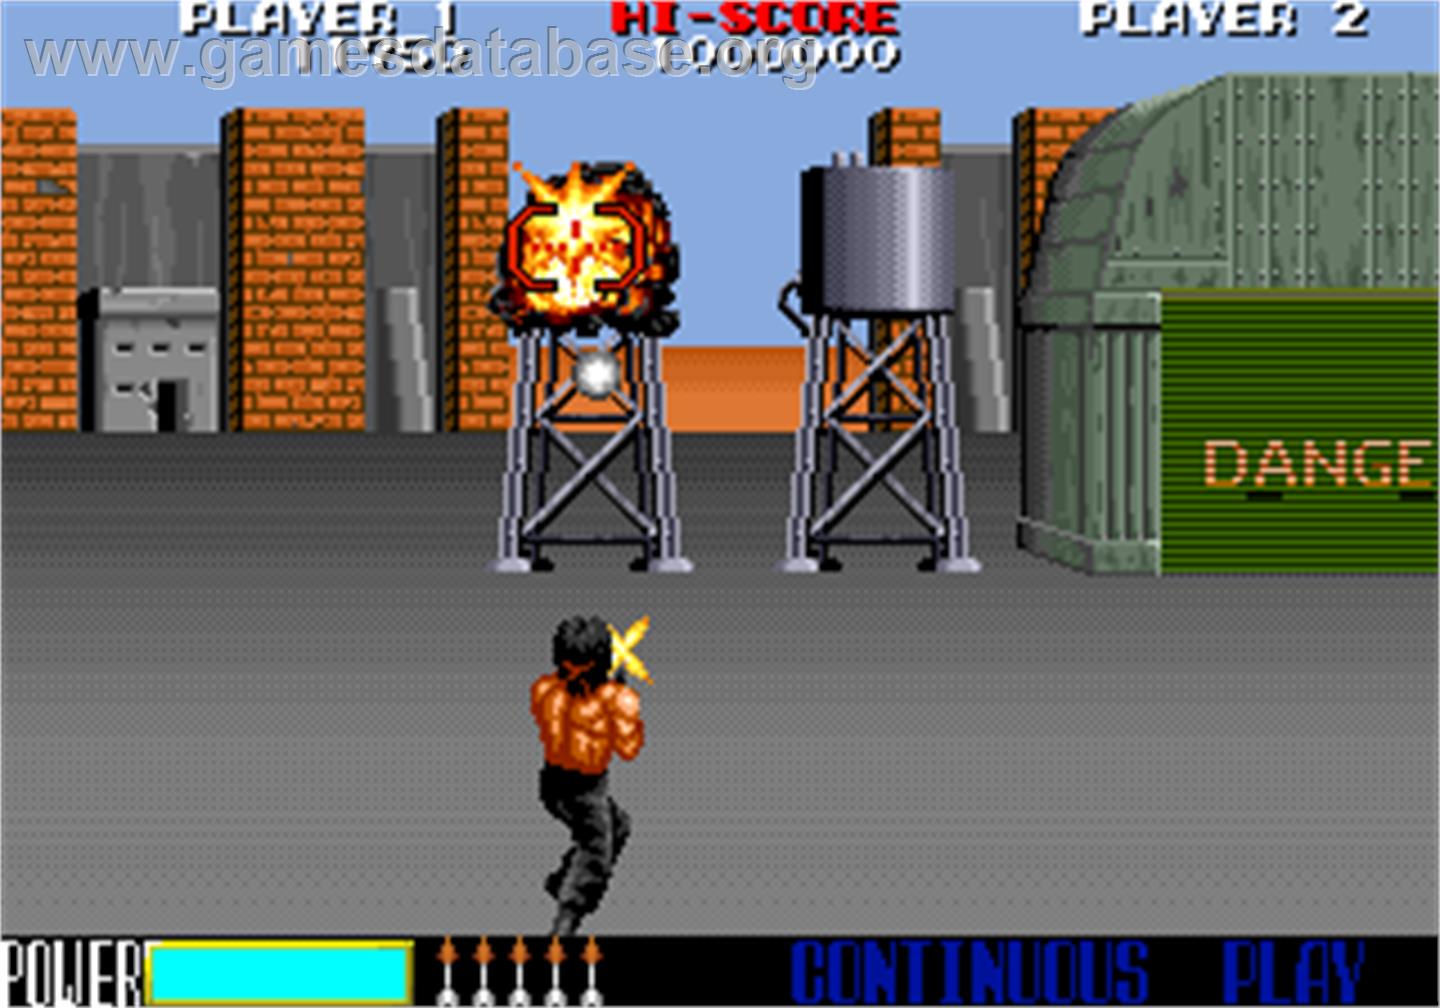 Rambo III - Arcade - Artwork - In Game